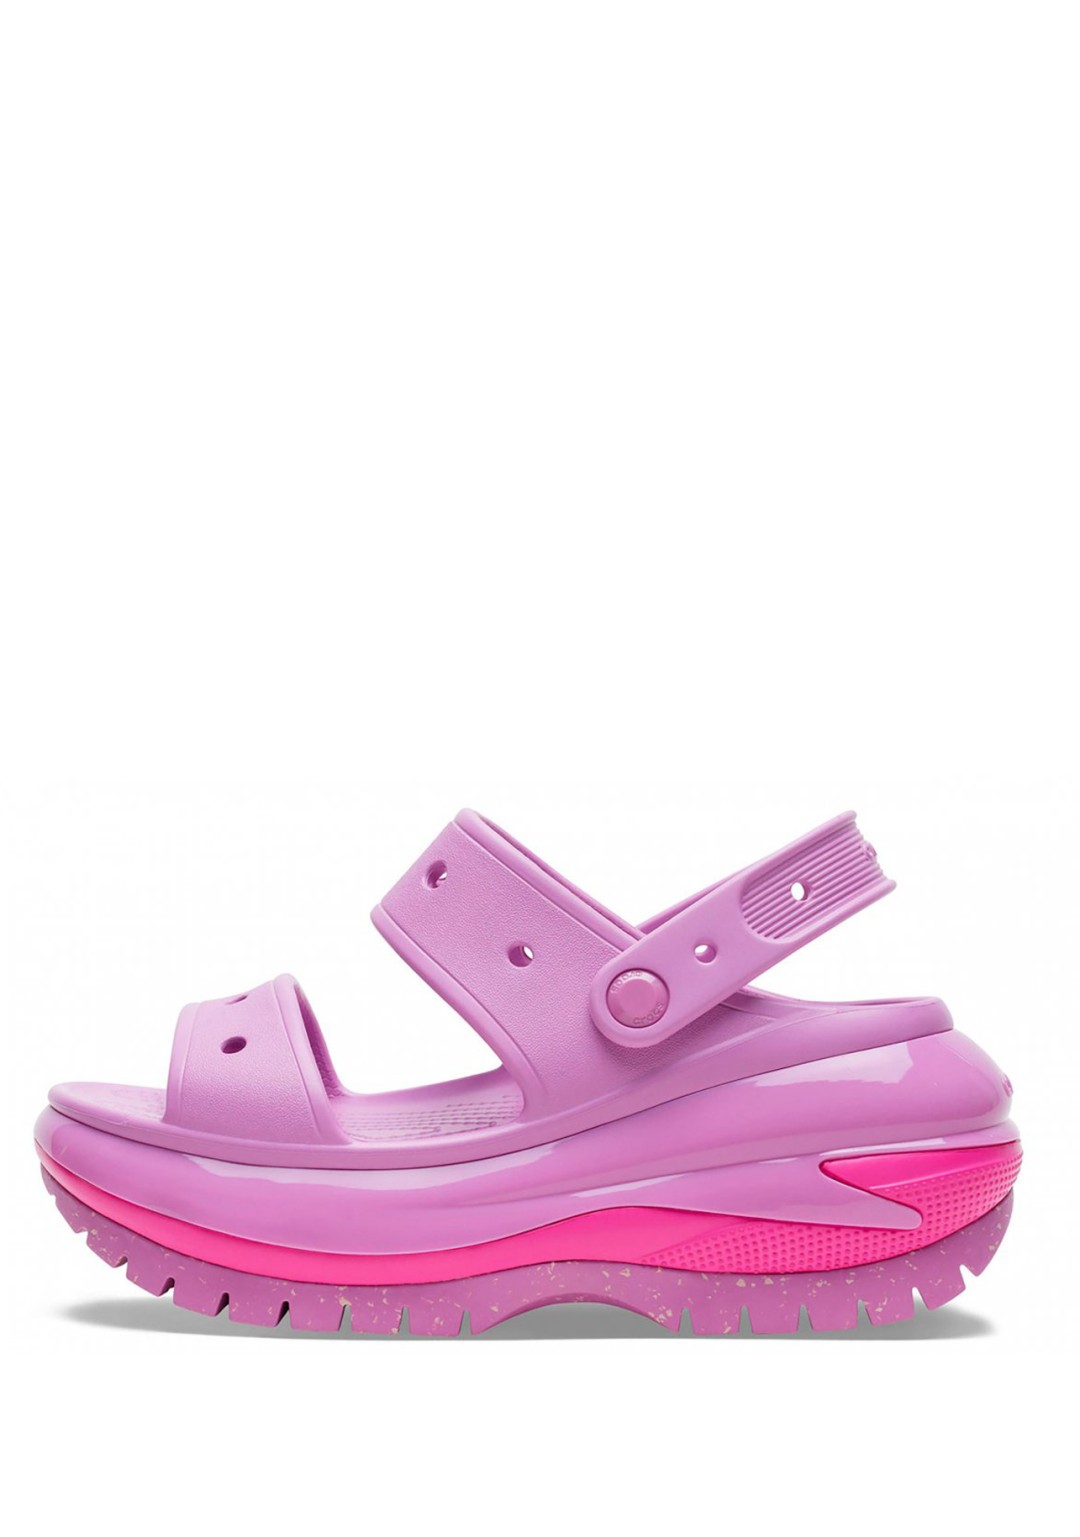 Crocs - Sandalo Platform - Donna - 207989-6WQ